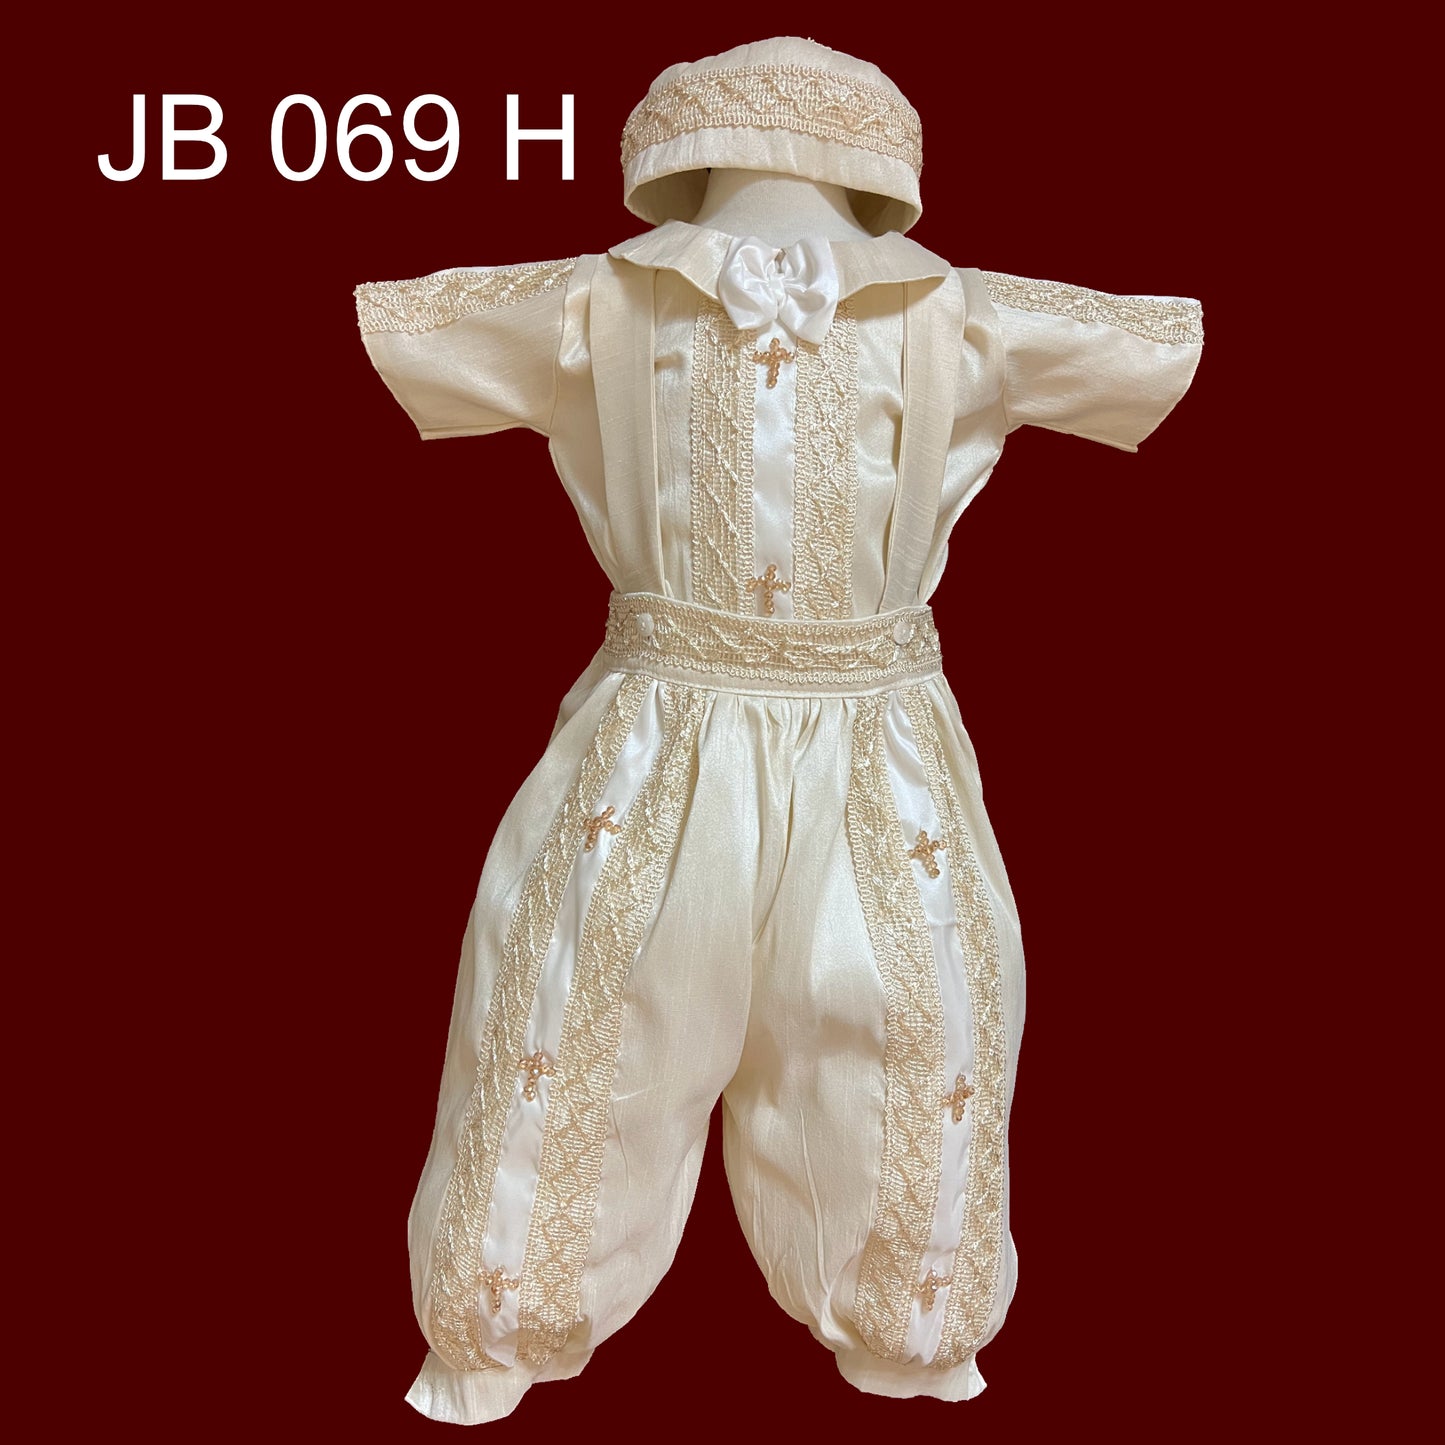 JB 069 H